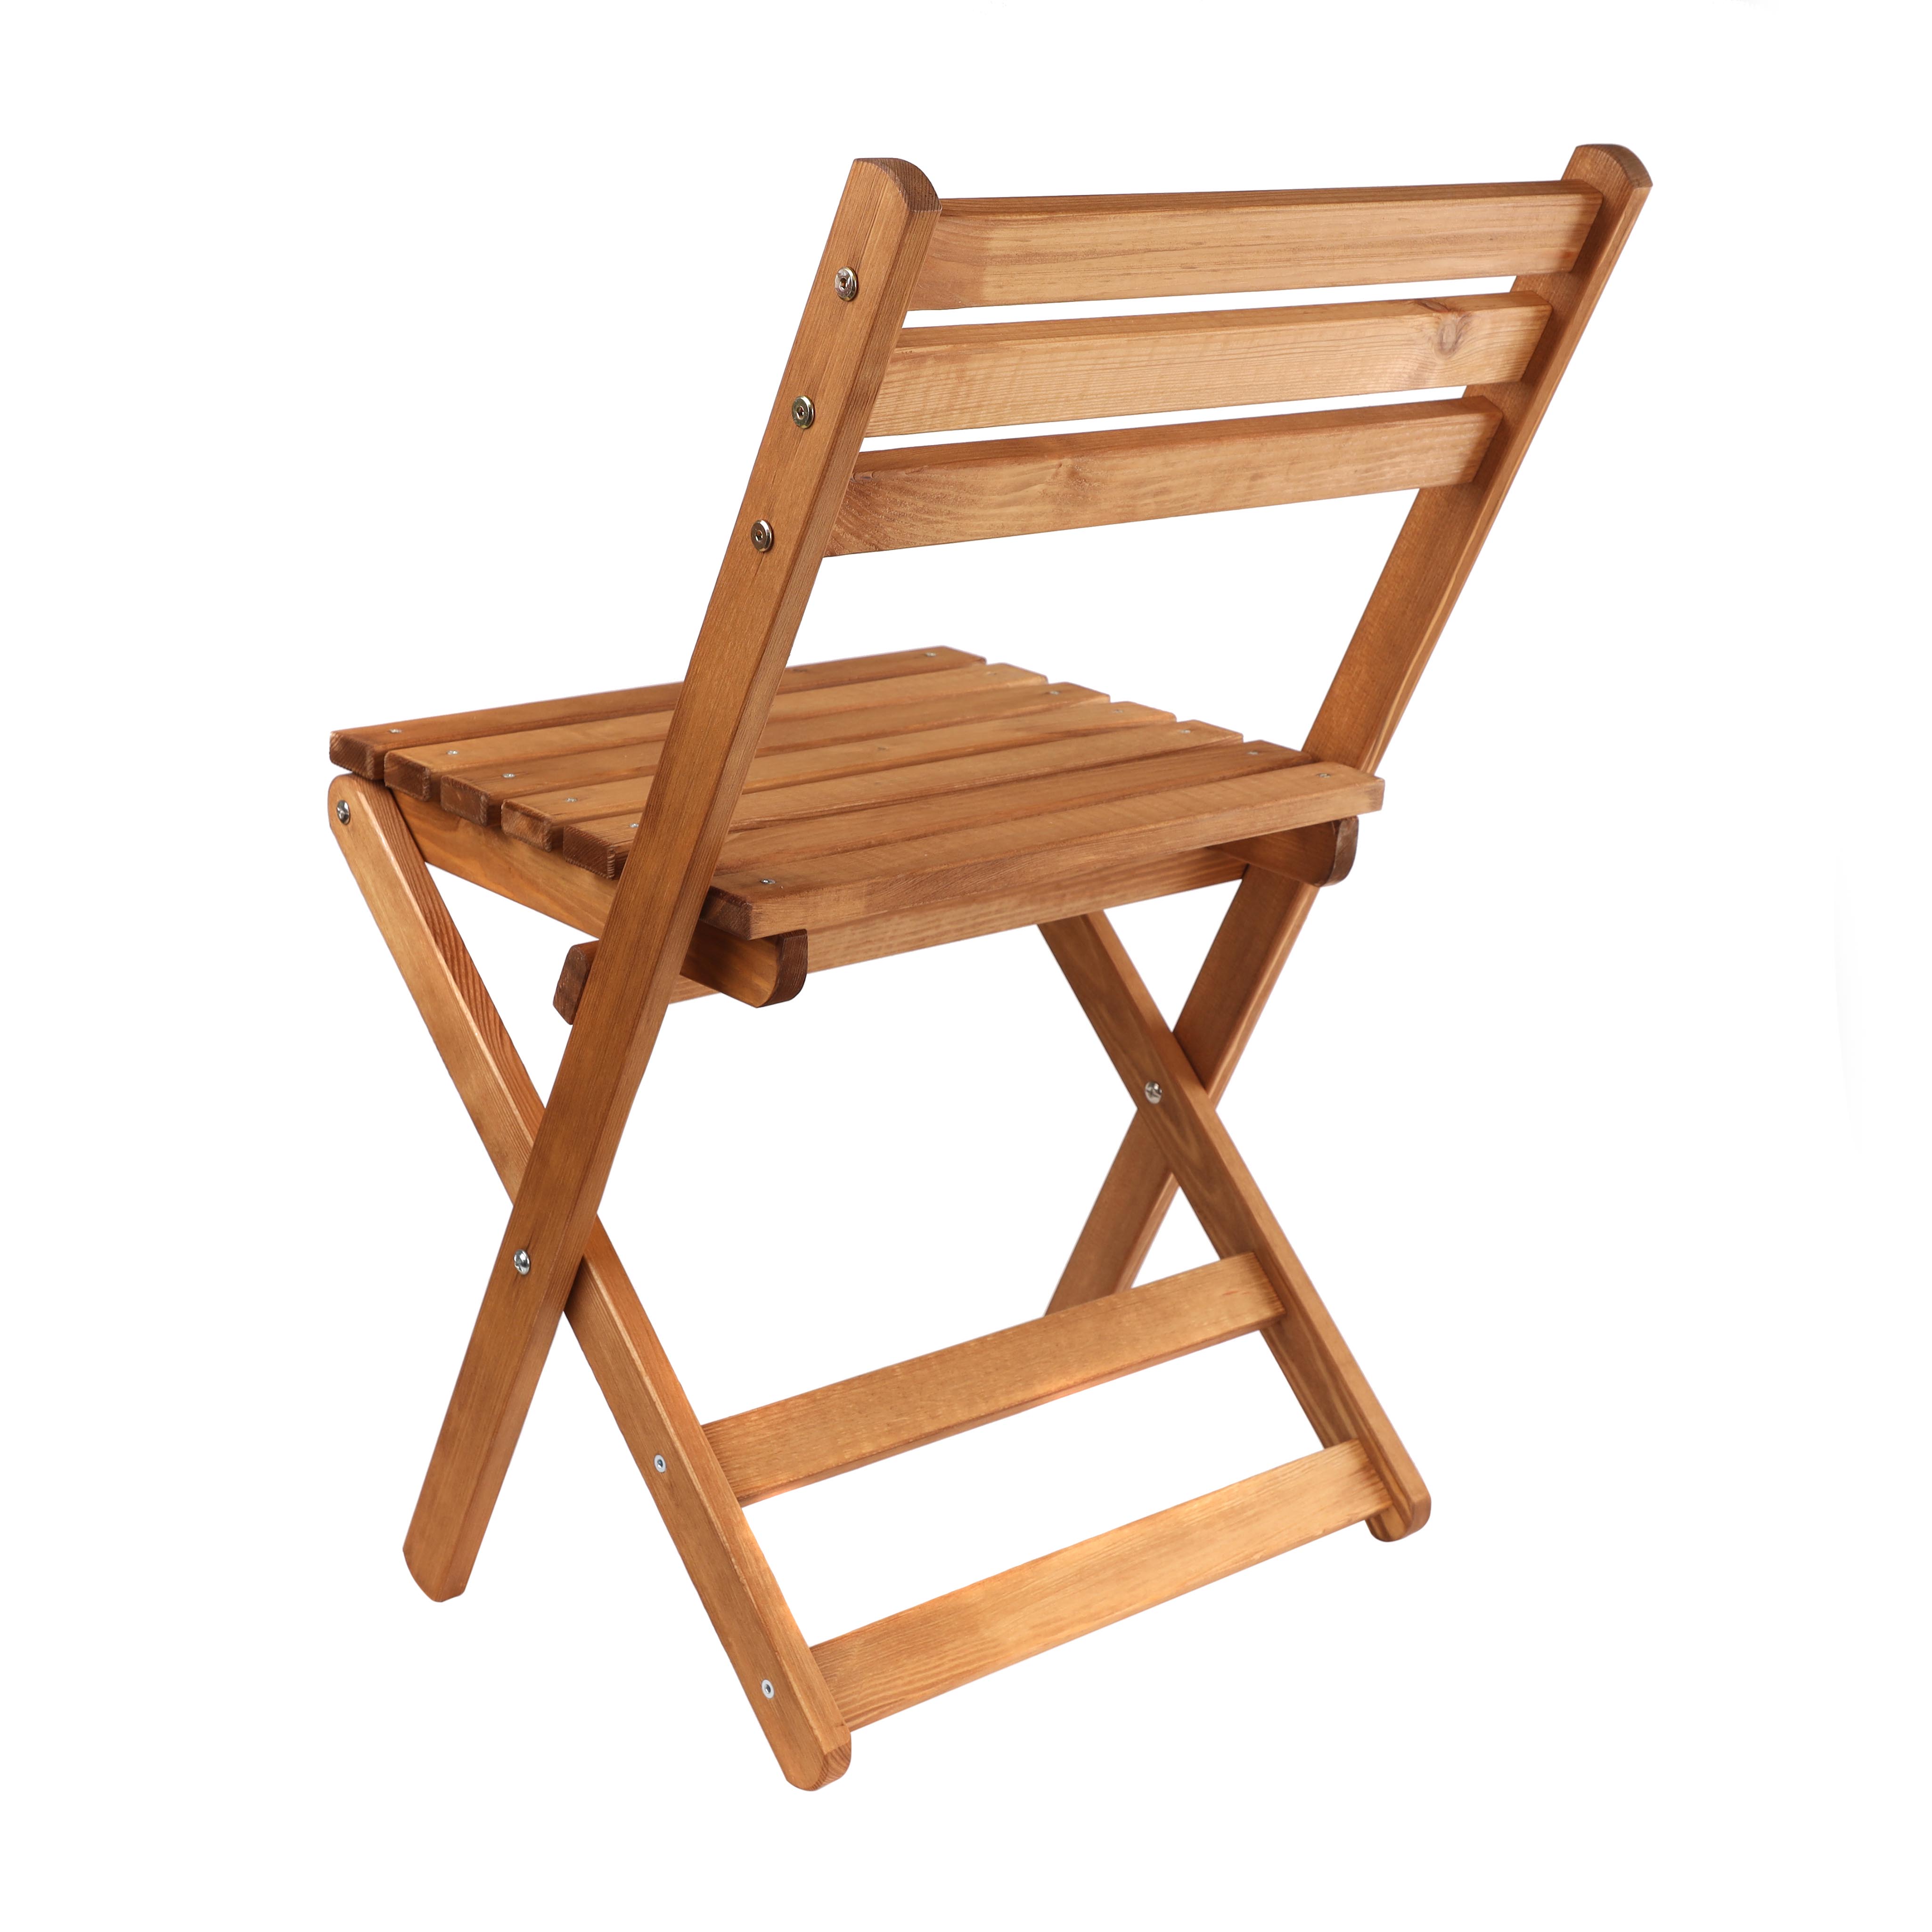 Складной стул для дома. Стулья для дома. Hoff складной садовый стул. Складной стул 43х51х77 см, береза 1 32711. Стулья для дома дешево.